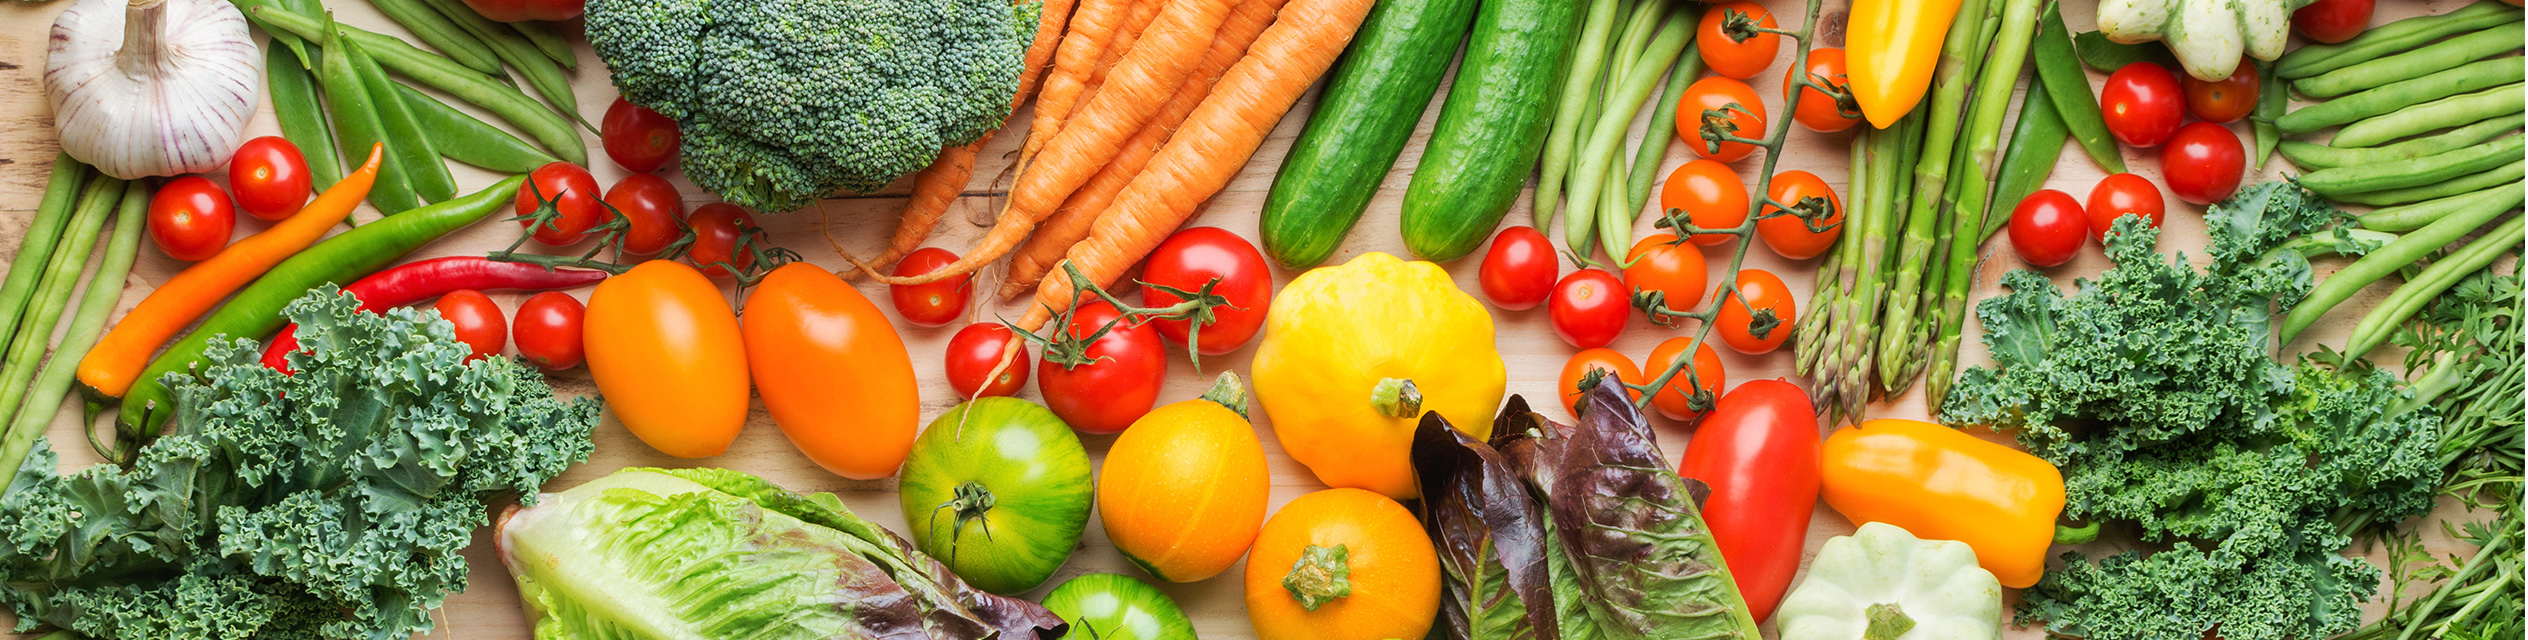 Zöldség és gyümölcs fogyasztás